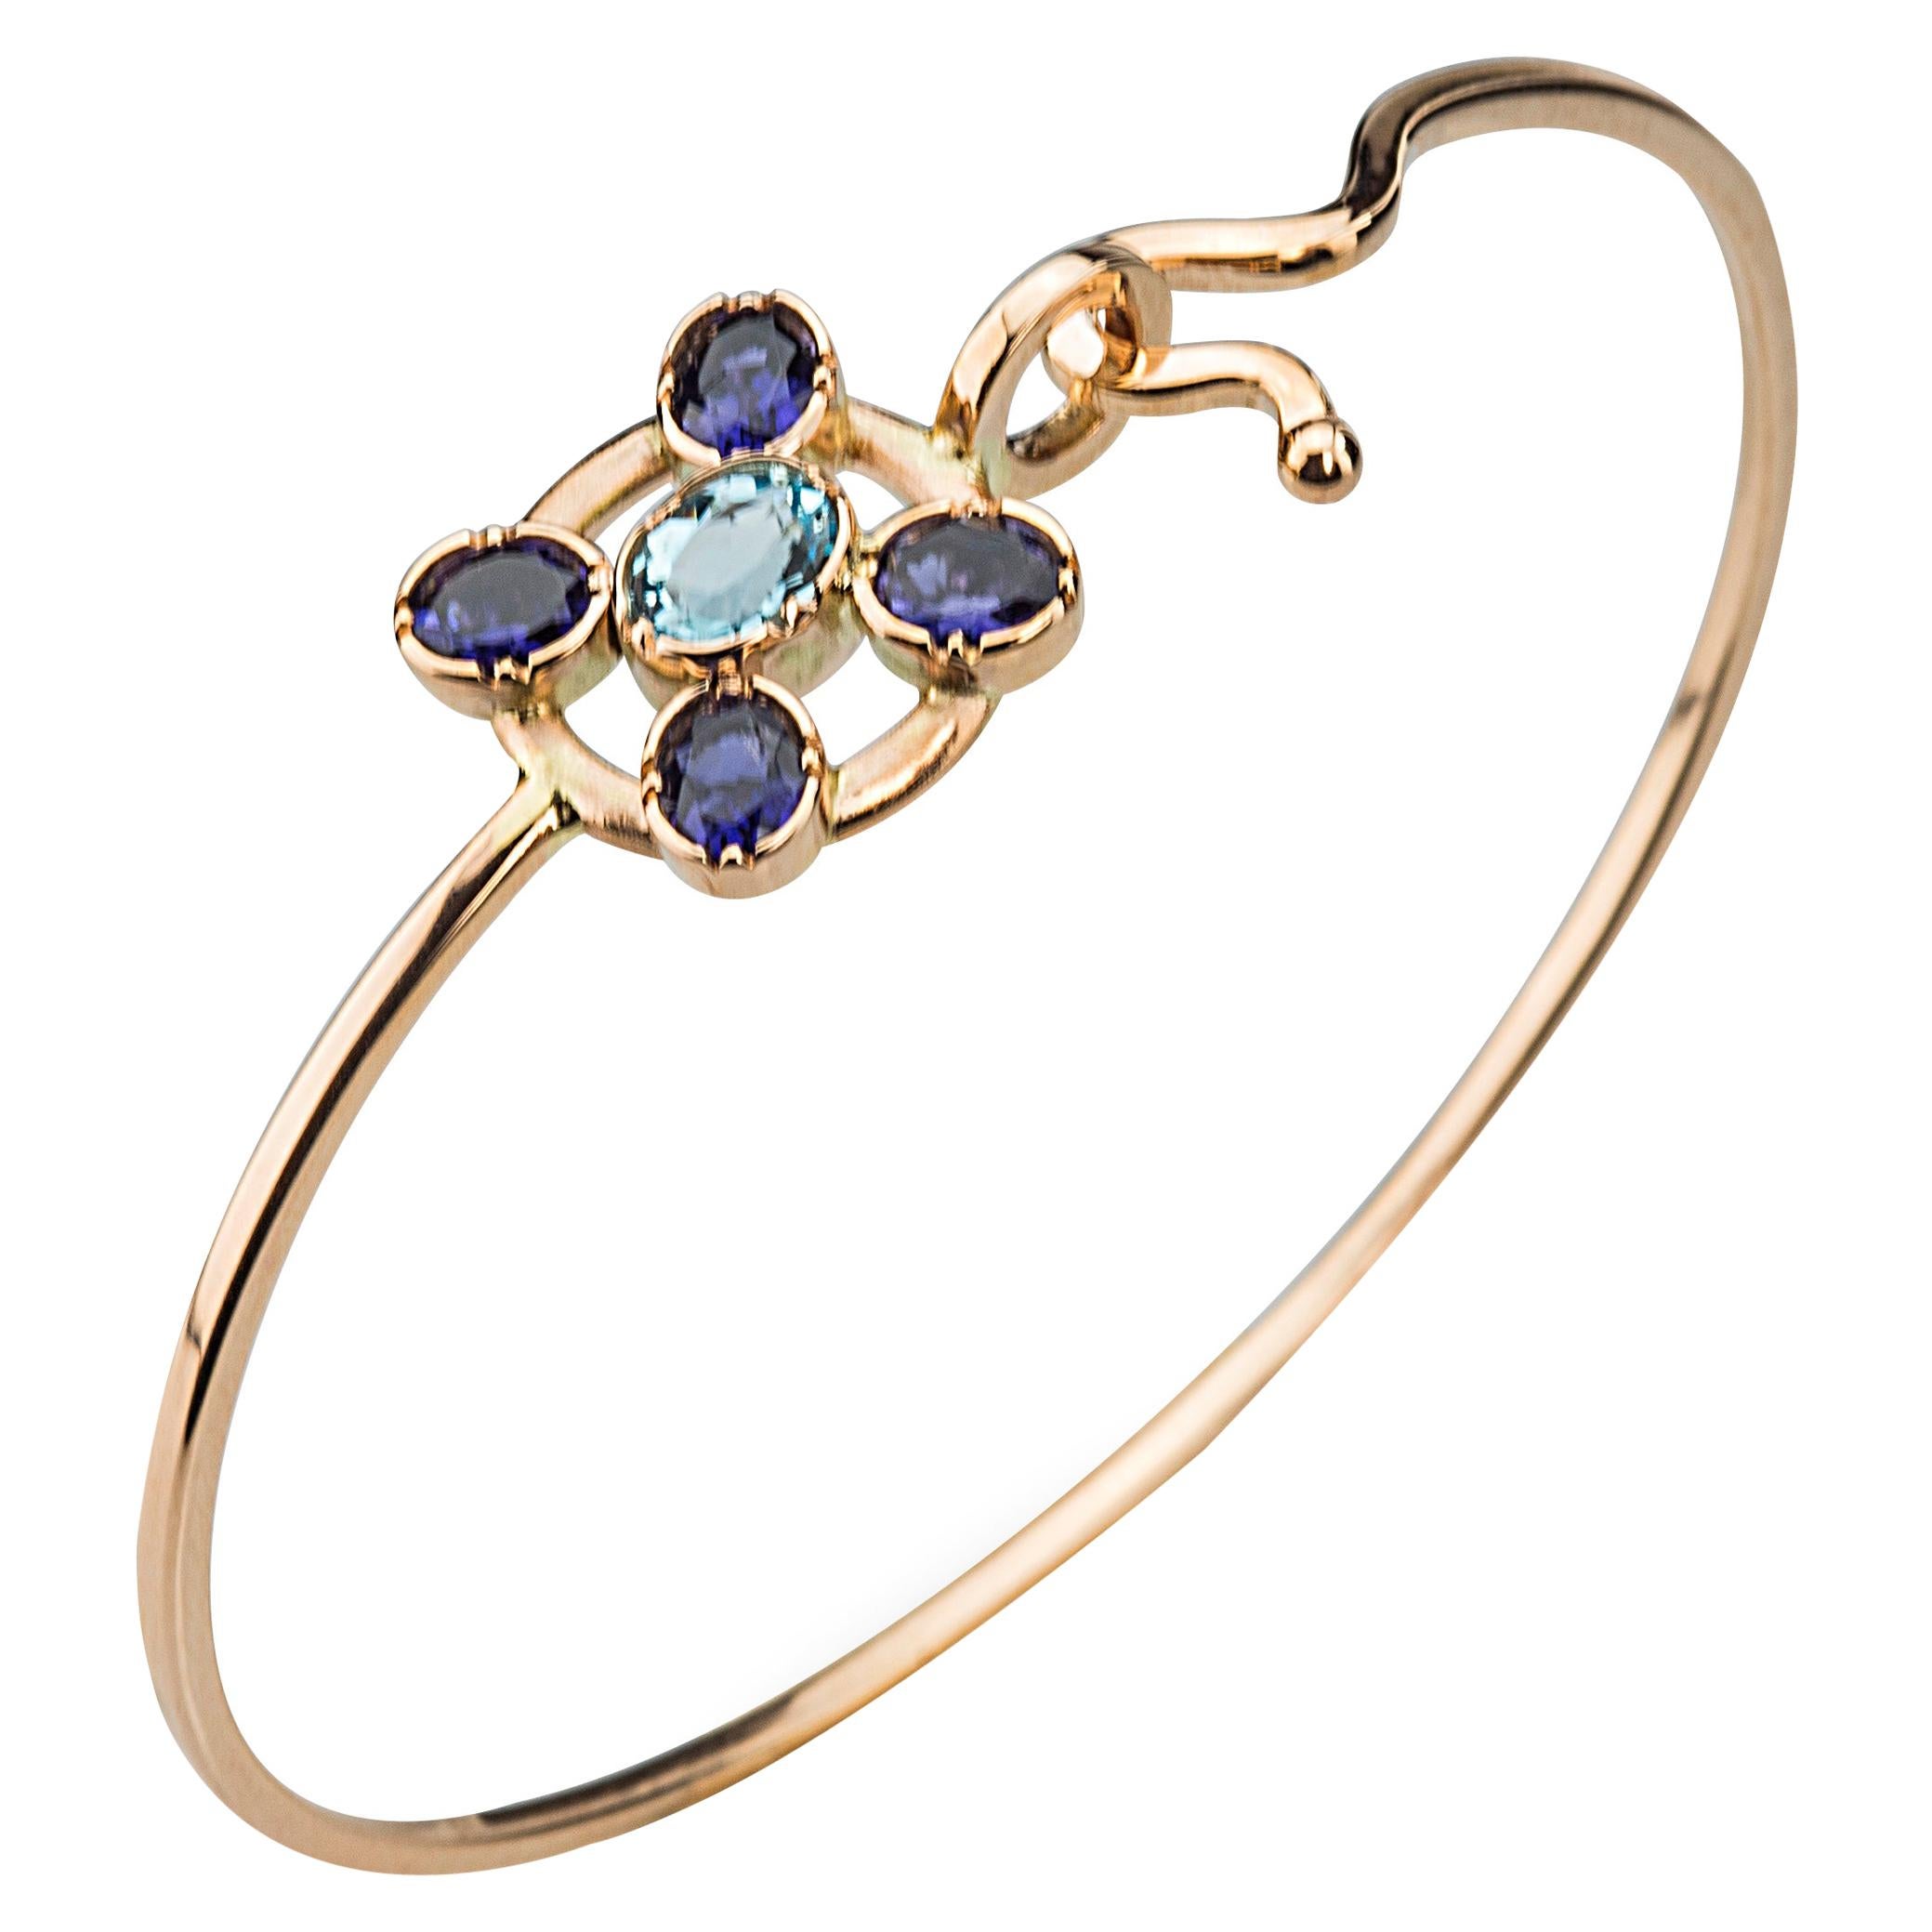  18K Gold Blue Sapphires Aquamarine Twisted Bangle Modern Flower Design Bracelet